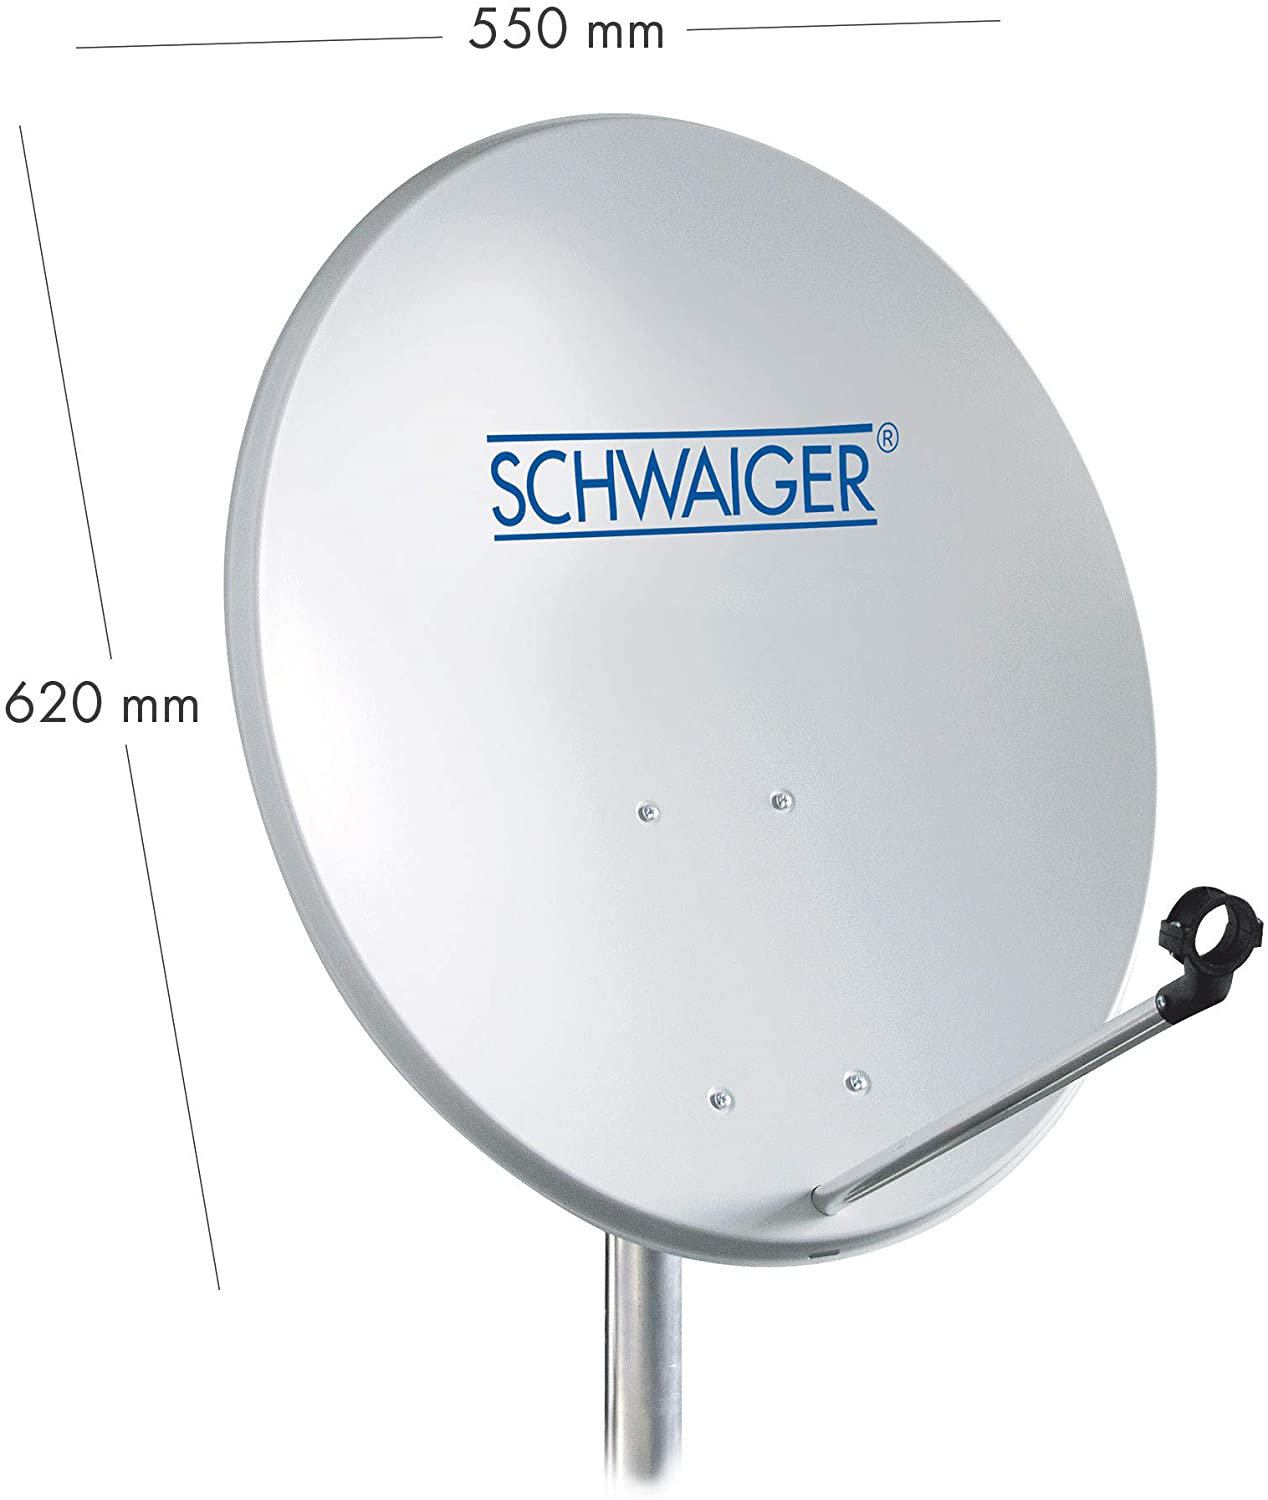 SCHWAIGER -714470- (55 Twin SAT LNB) aus Stahl Anlage cm